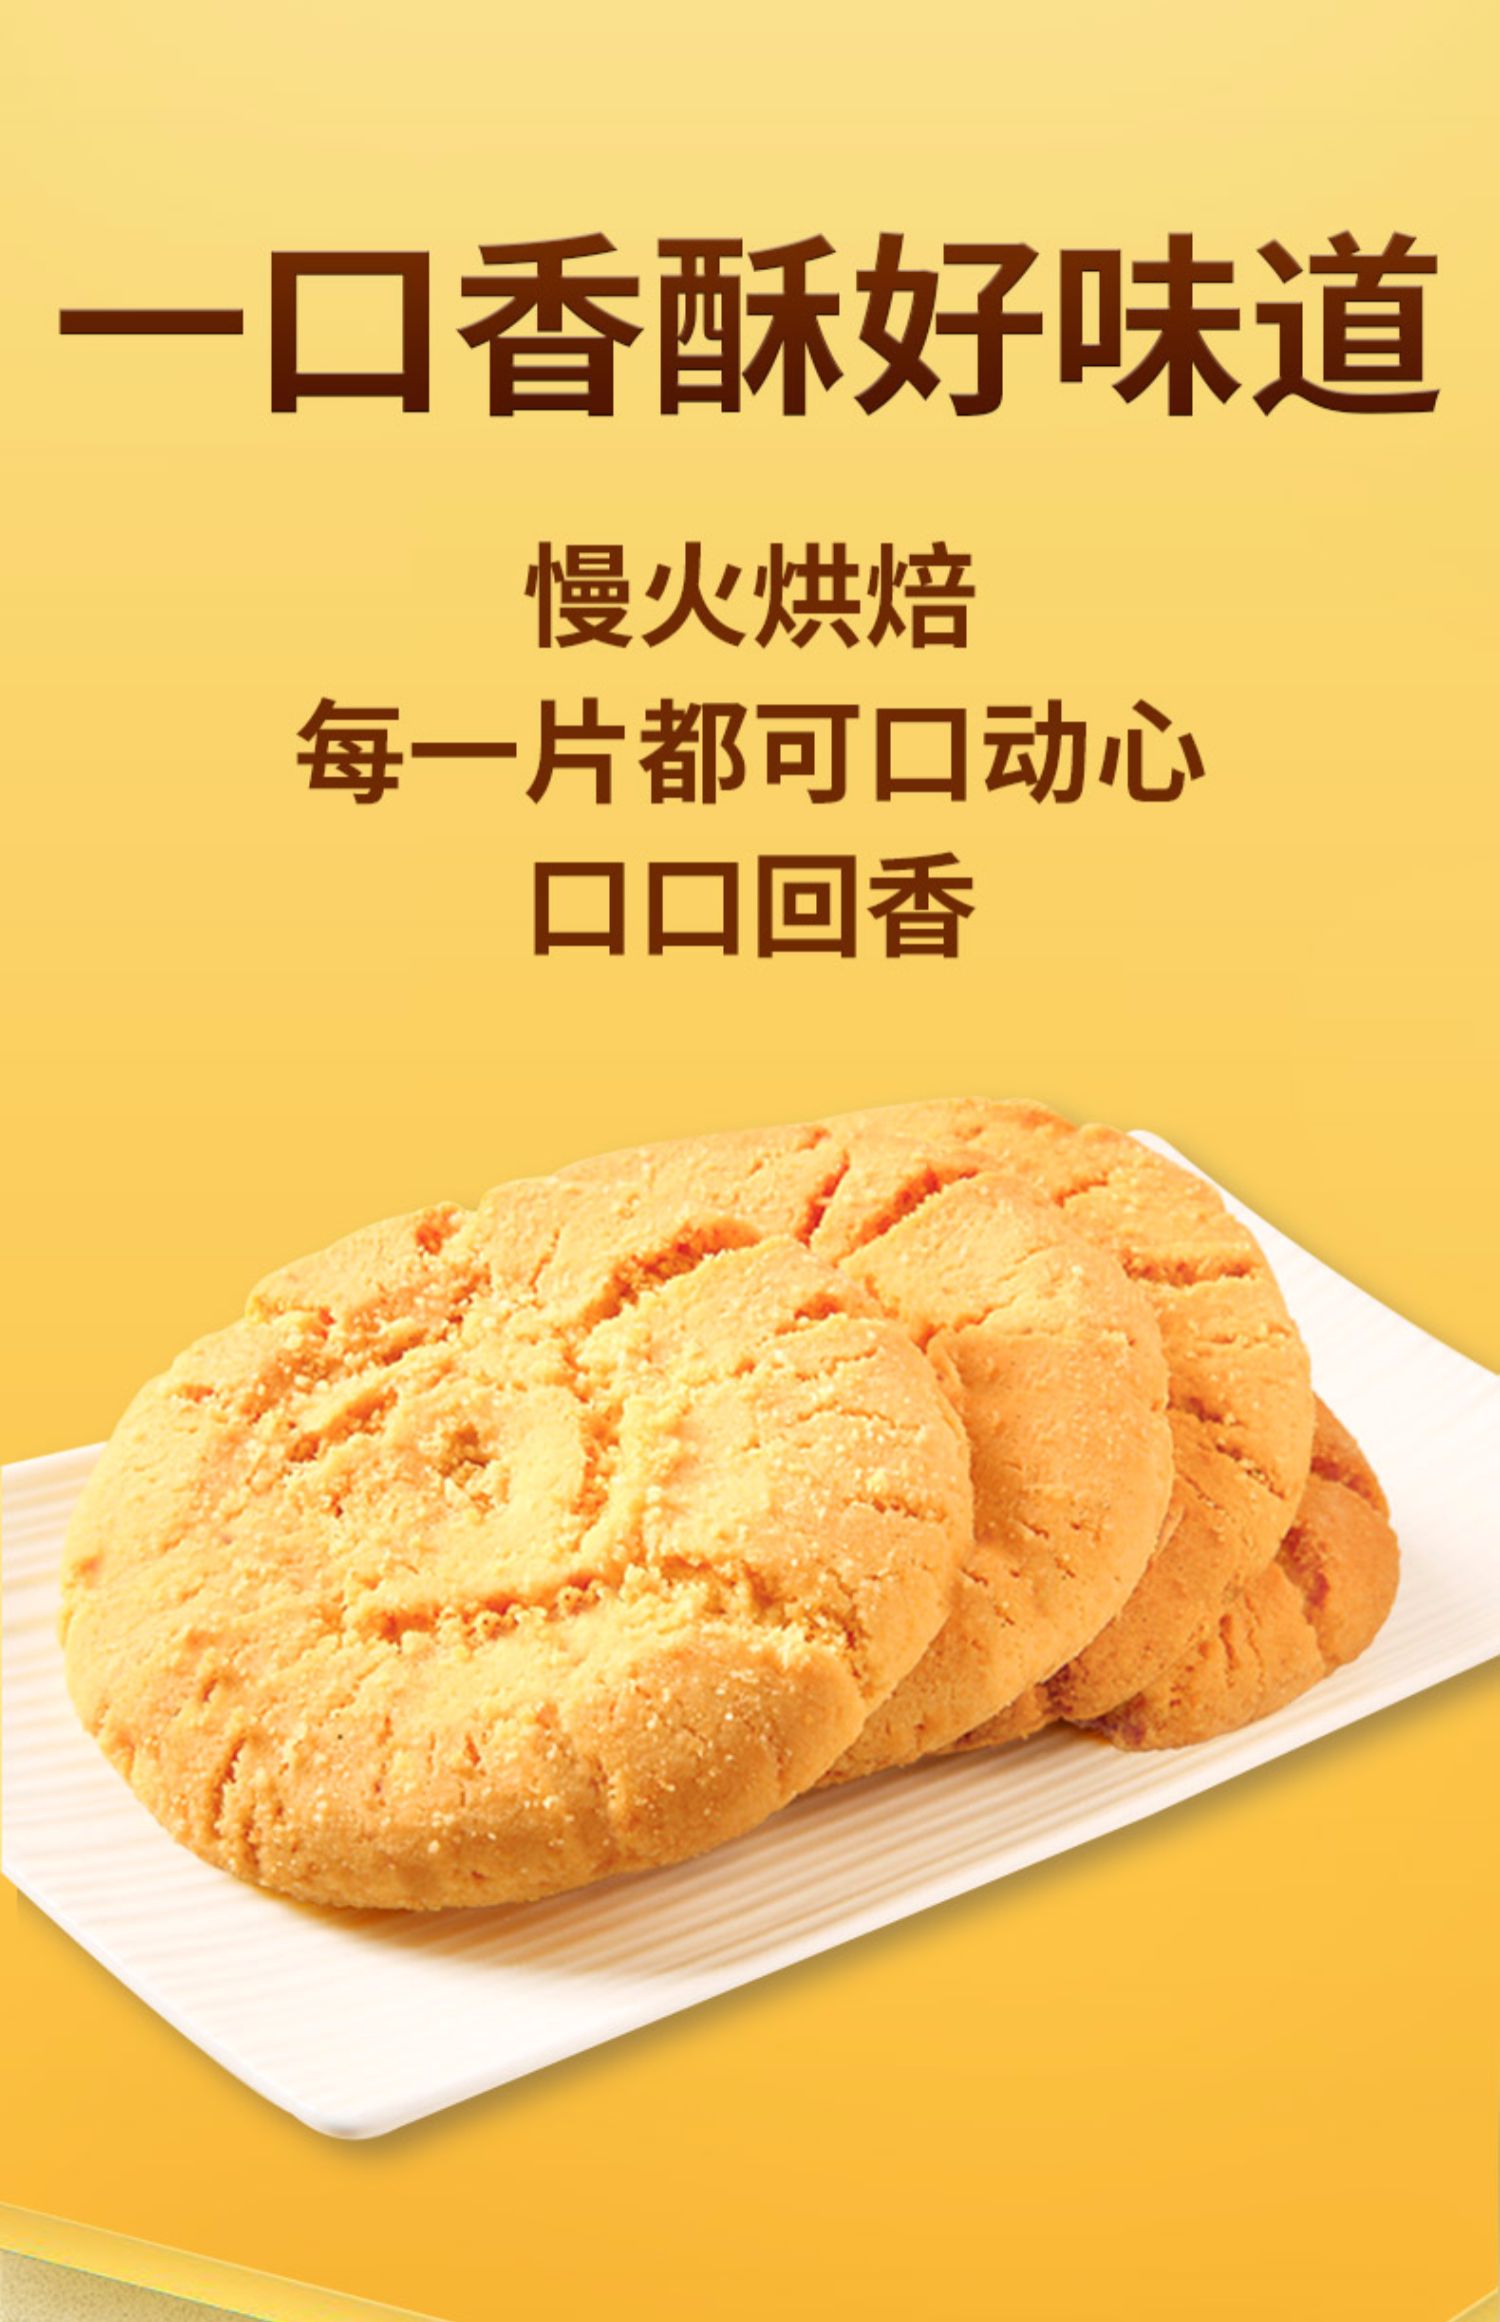 桃酥148g老式传统糕点心饼干休闲零食品小吃